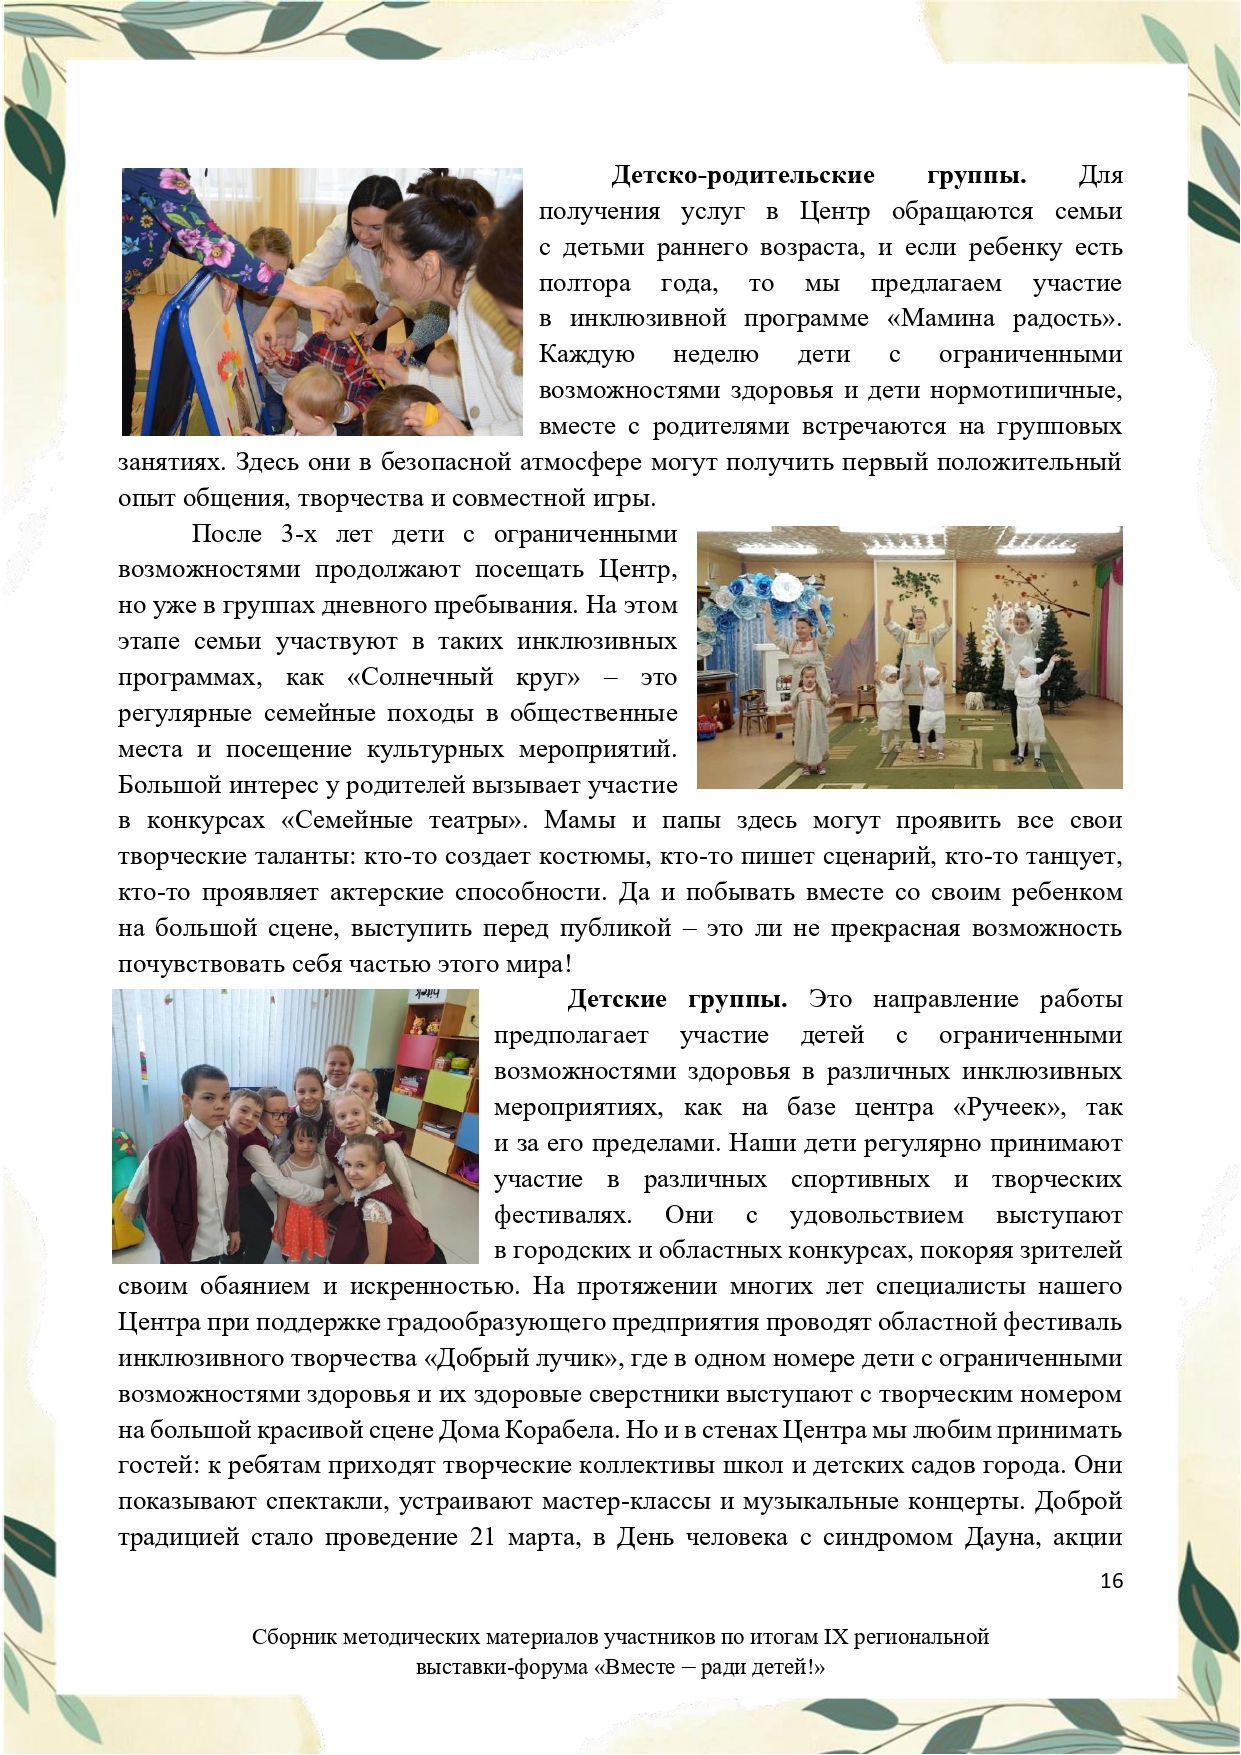 Sbornik_metodicheskikh_materialov_uchastnikov_IX_regionalnoy_vystavki-foruma_Vmeste__radi_detey_33__2023_page-0016